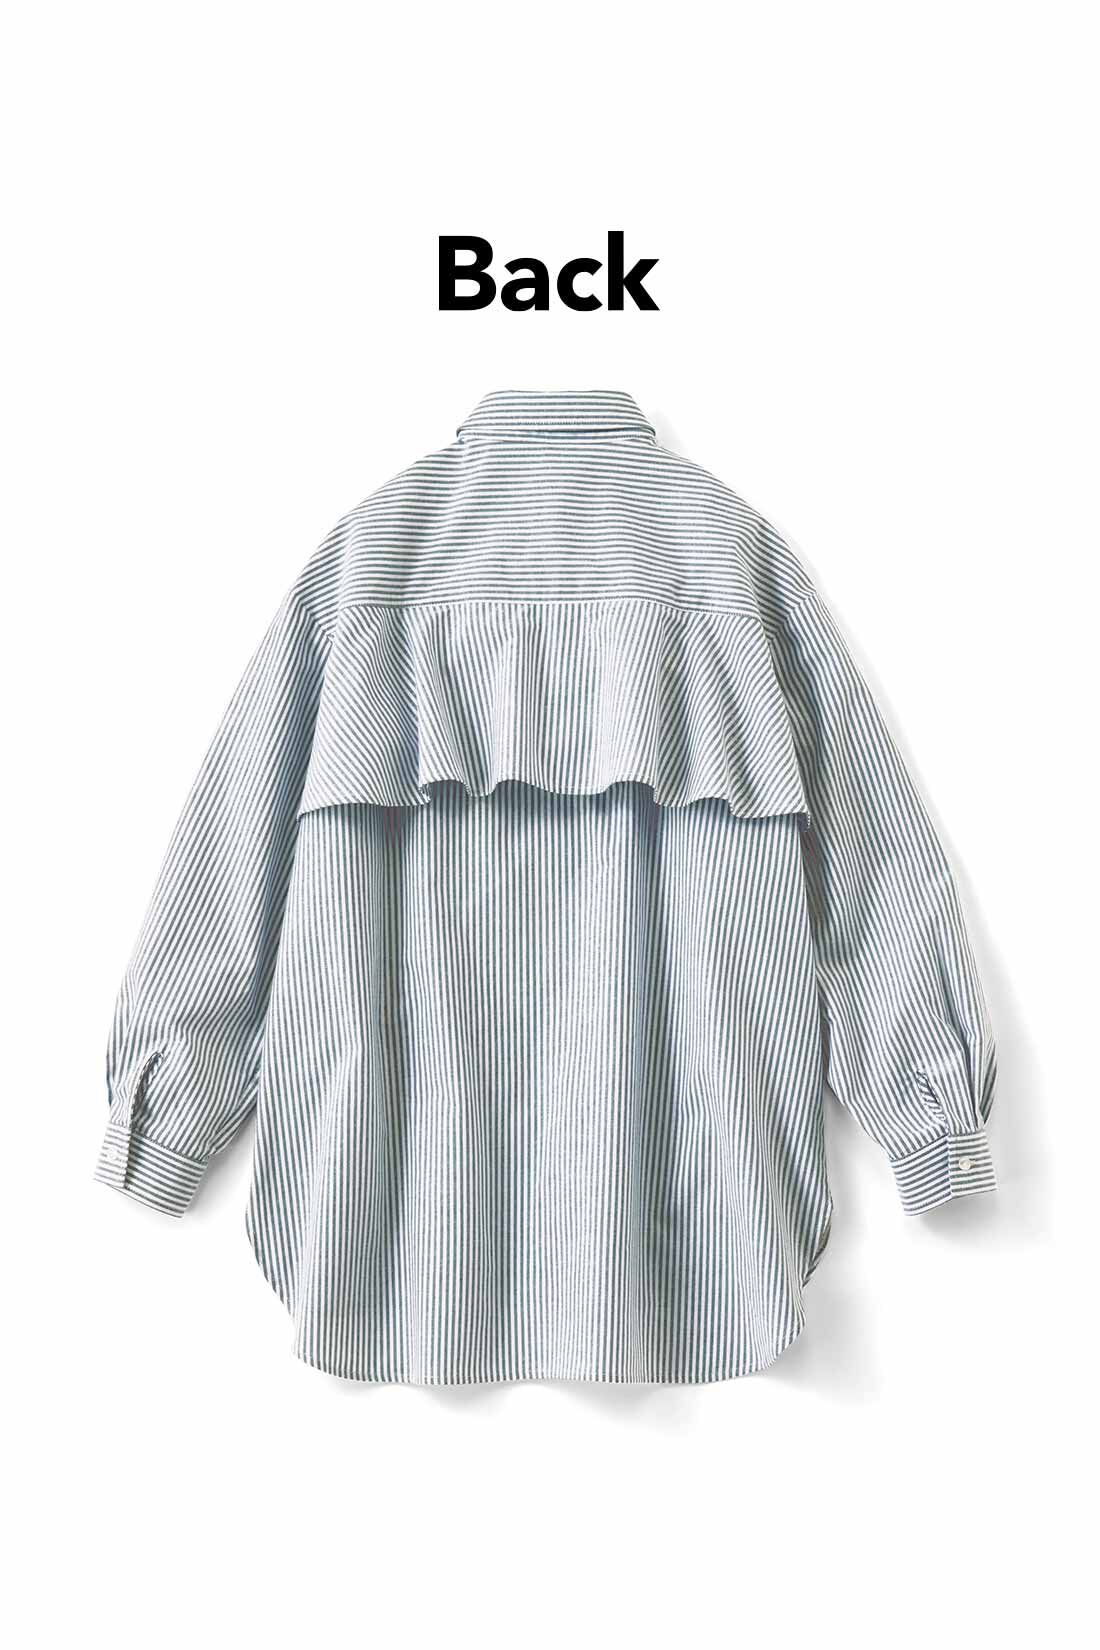 IEDIT[イディット]　バックフレアーデザインがきいた オックスフォード素材のこなれ見えシャツ〈パープル〉|バックフレアーで後ろ姿に女らしさをプラス。